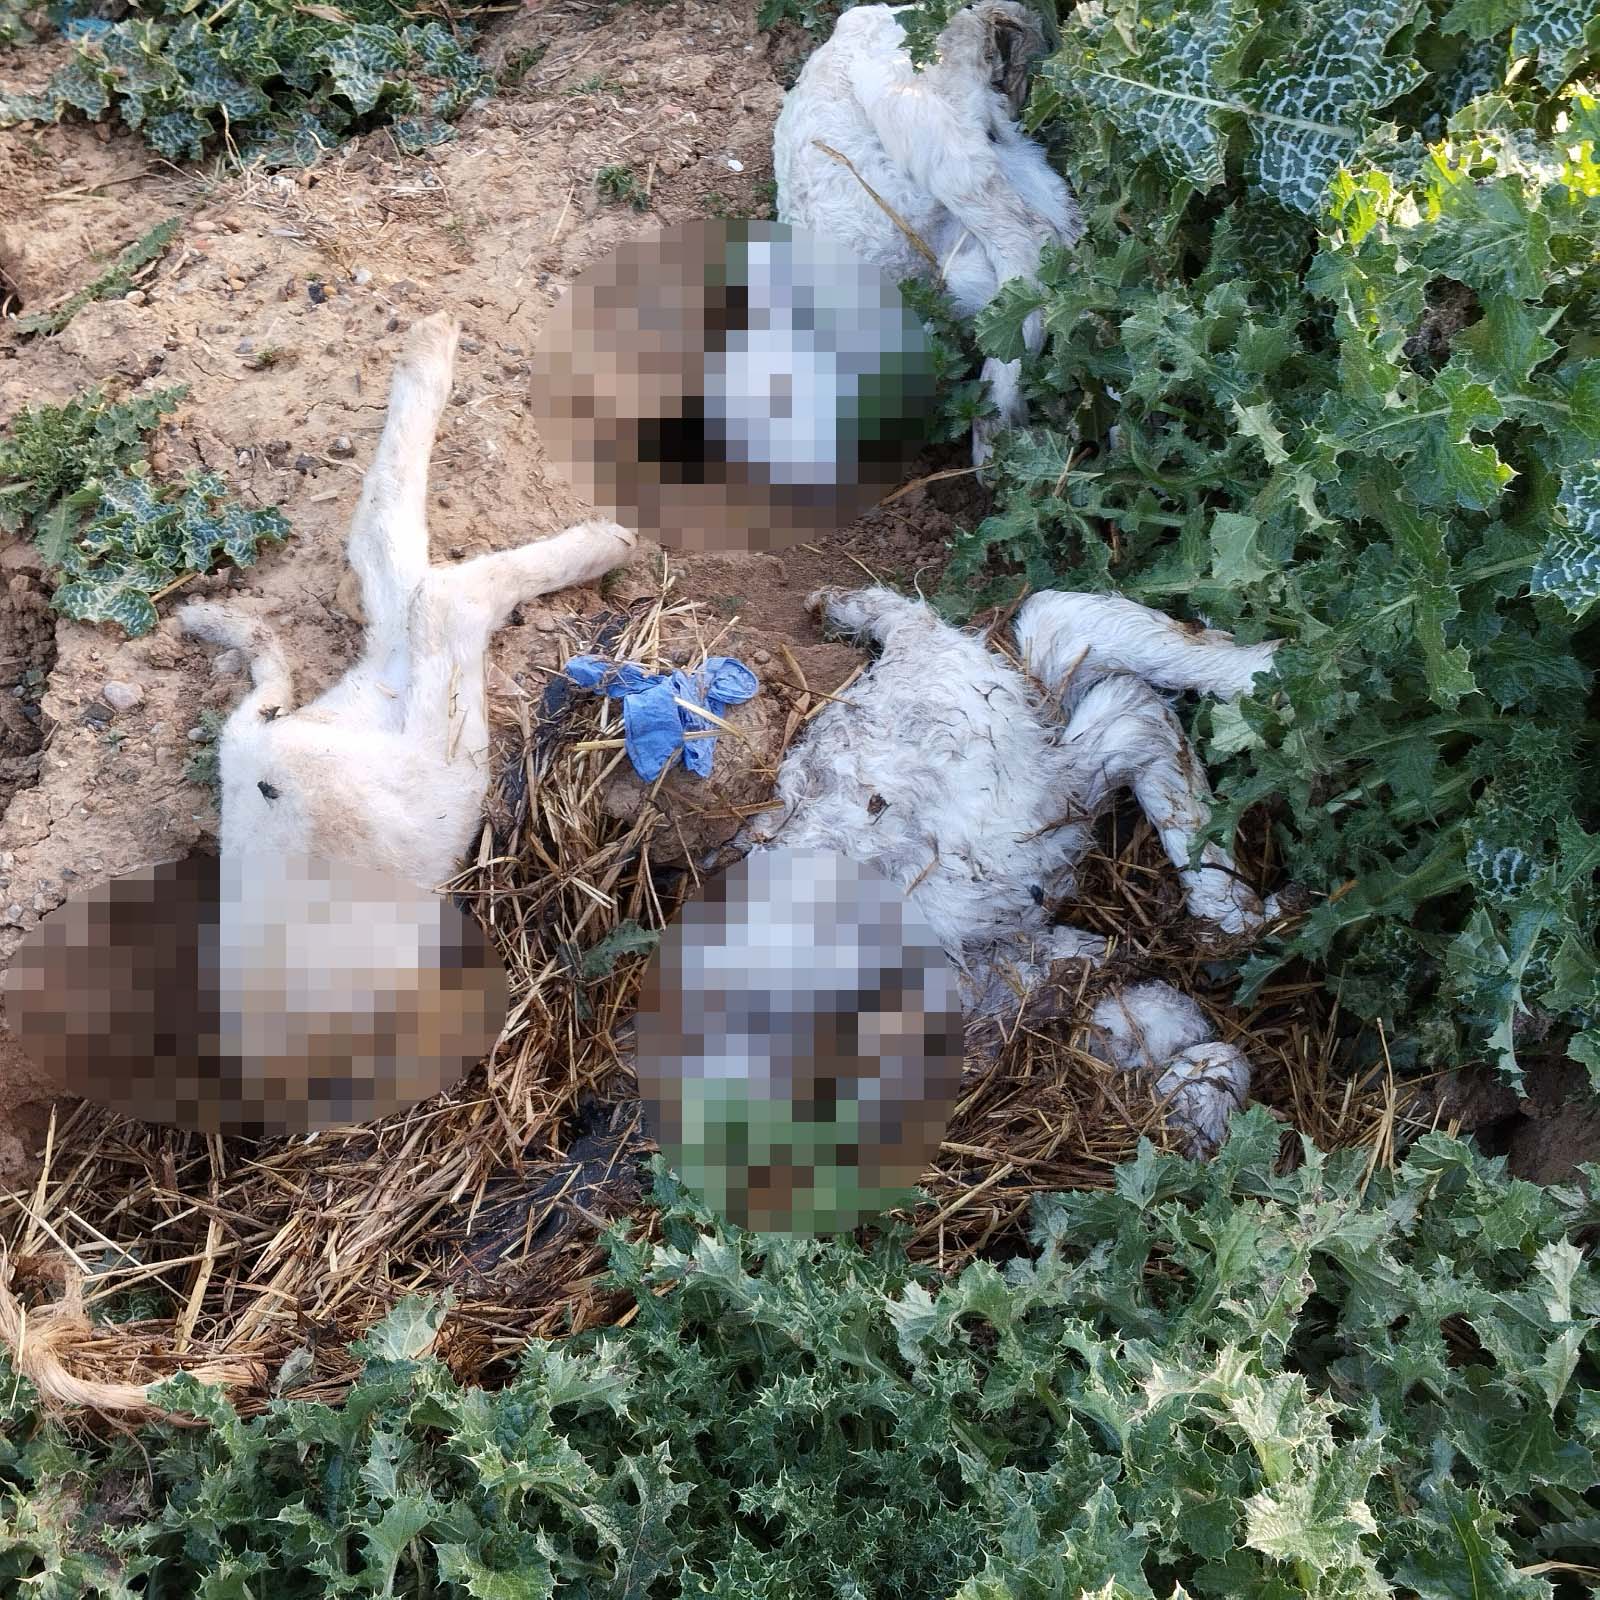 Animales muertos Villanueva del Campo